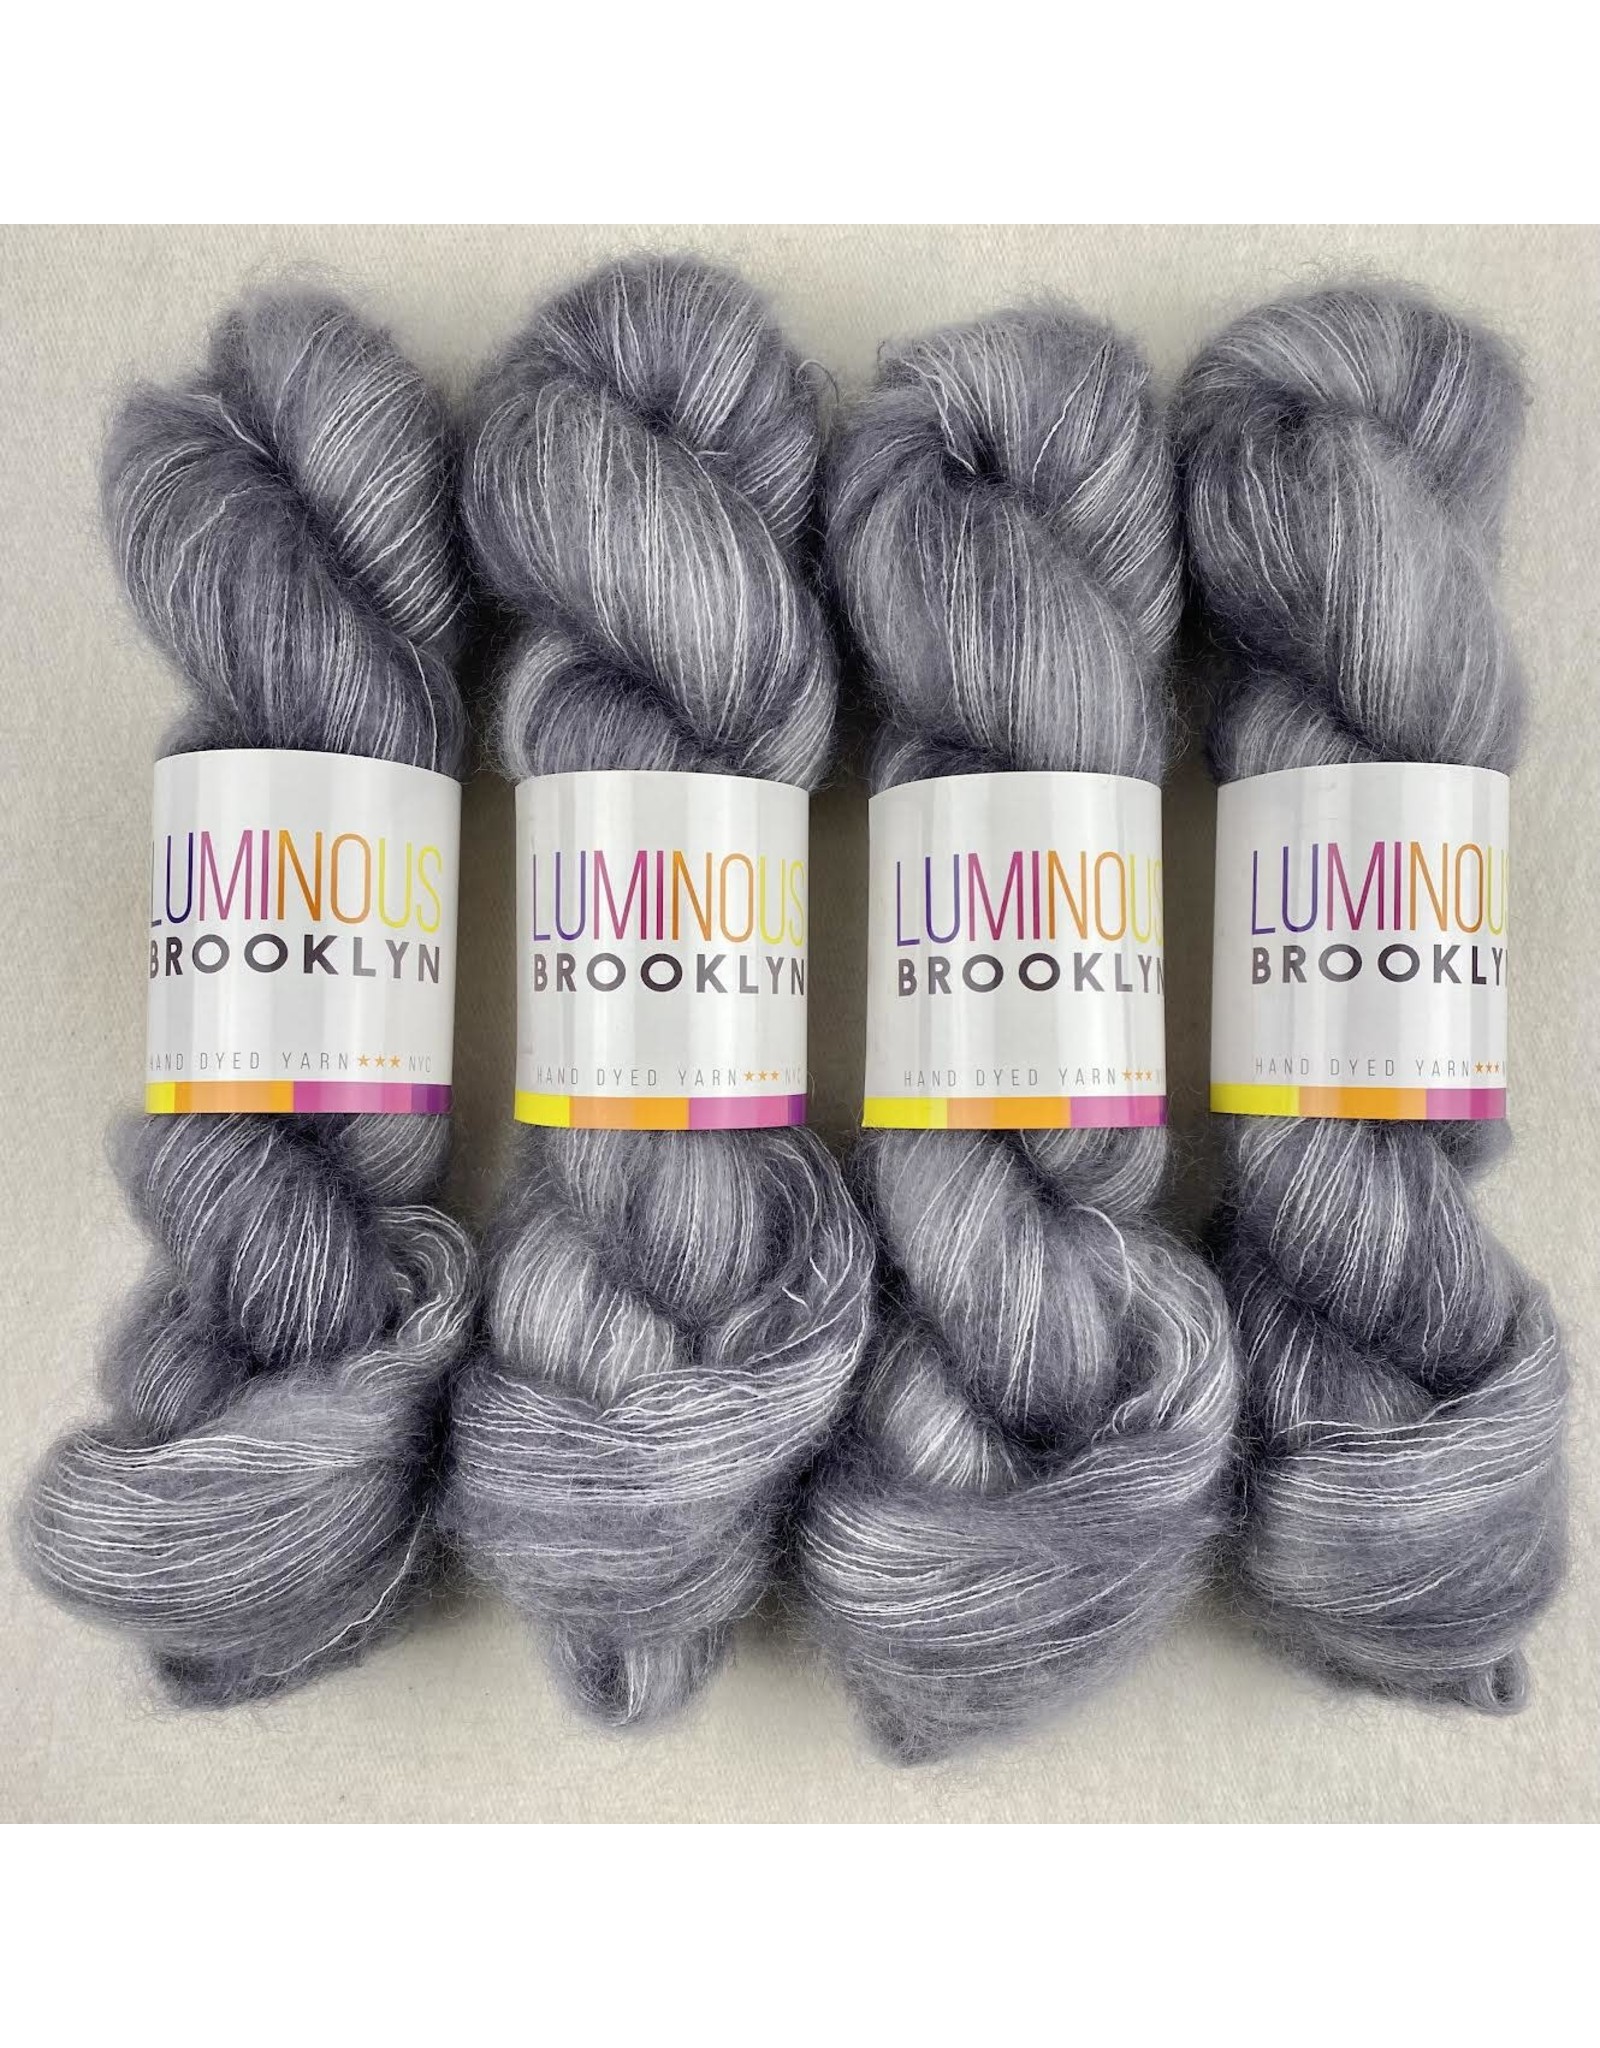 Luminous Brooklyn Greys and Greys - Shining Silk Mohair - Luminous Brooklyn